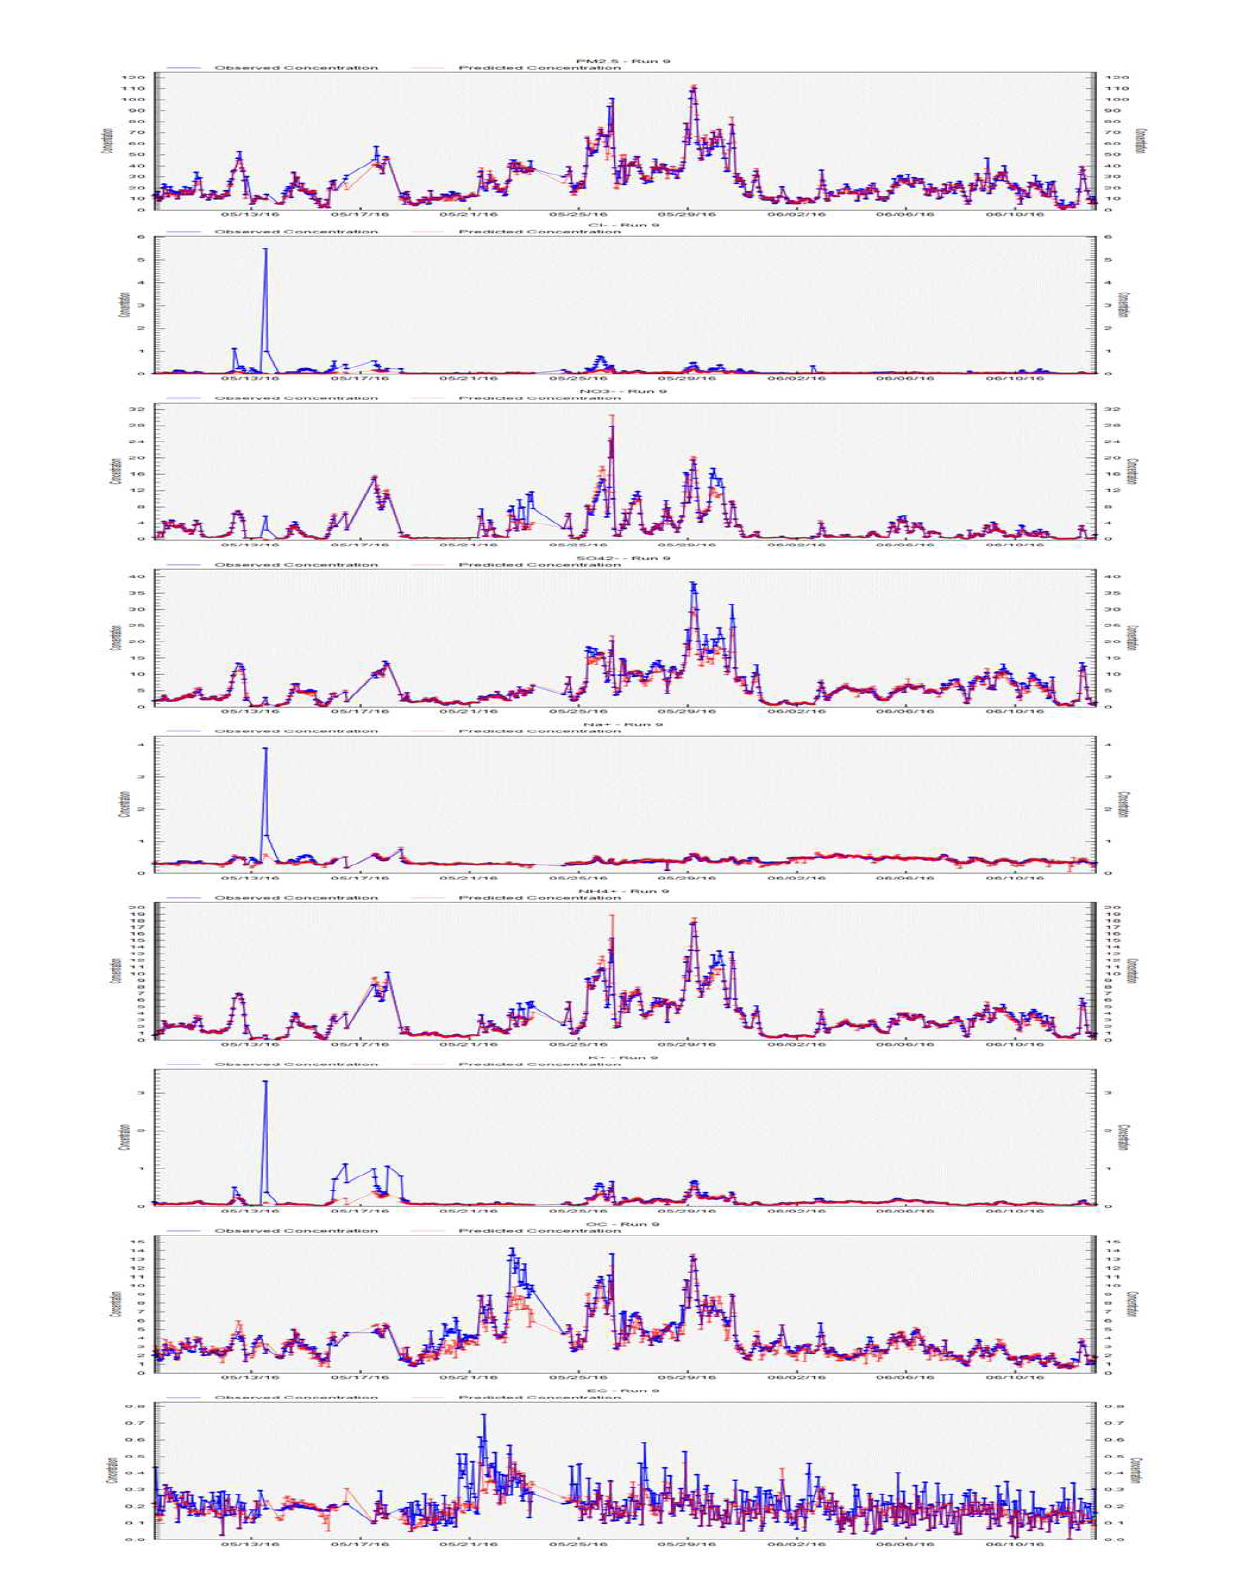 백령도 PM2.5, 이온성분, 탄소성분 시계열 그래프